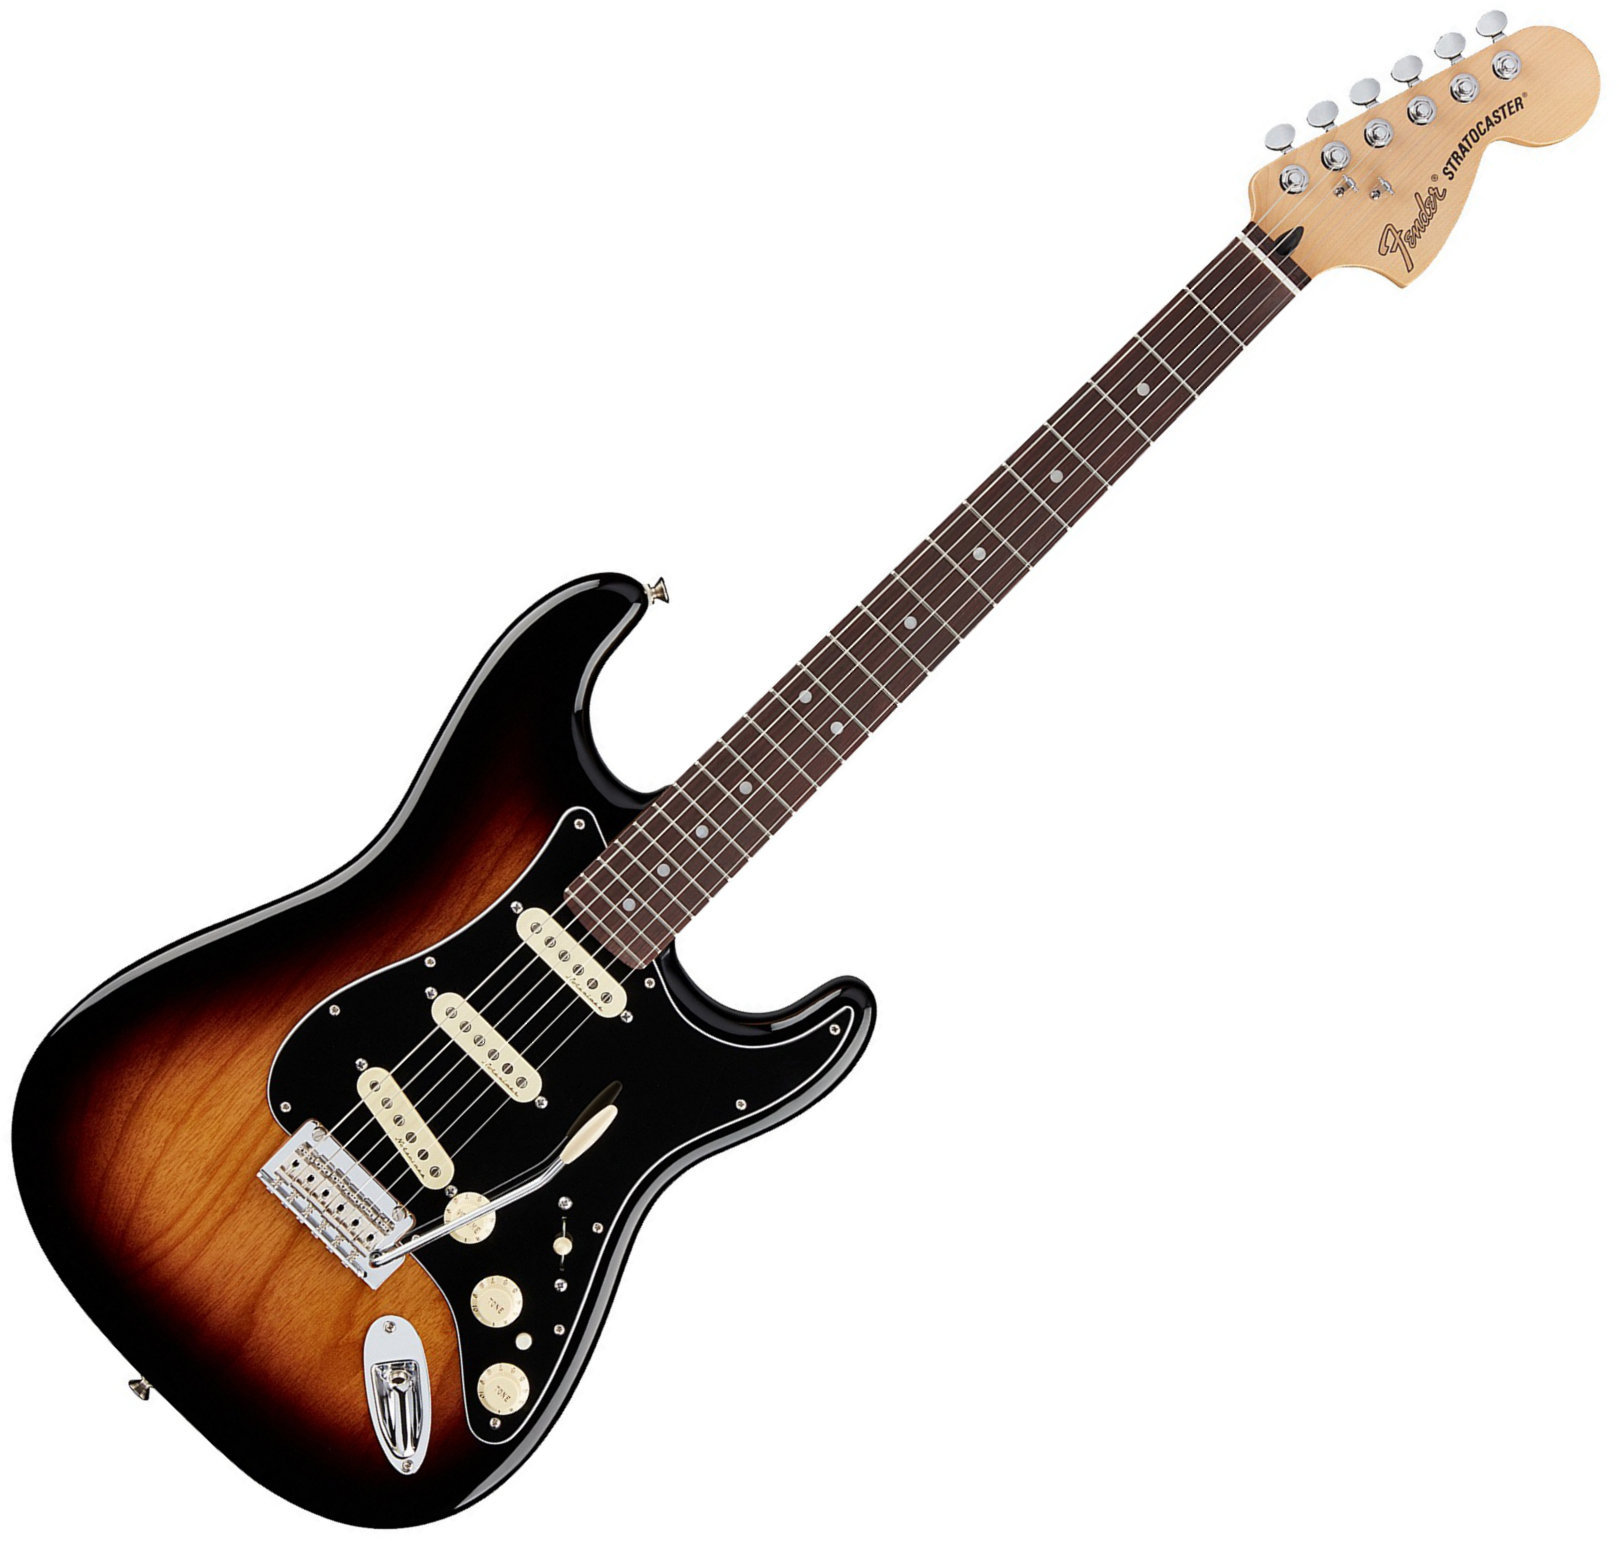 Sähkökitara Fender Deluxe Stratocaster RW 2-Color Sunburst